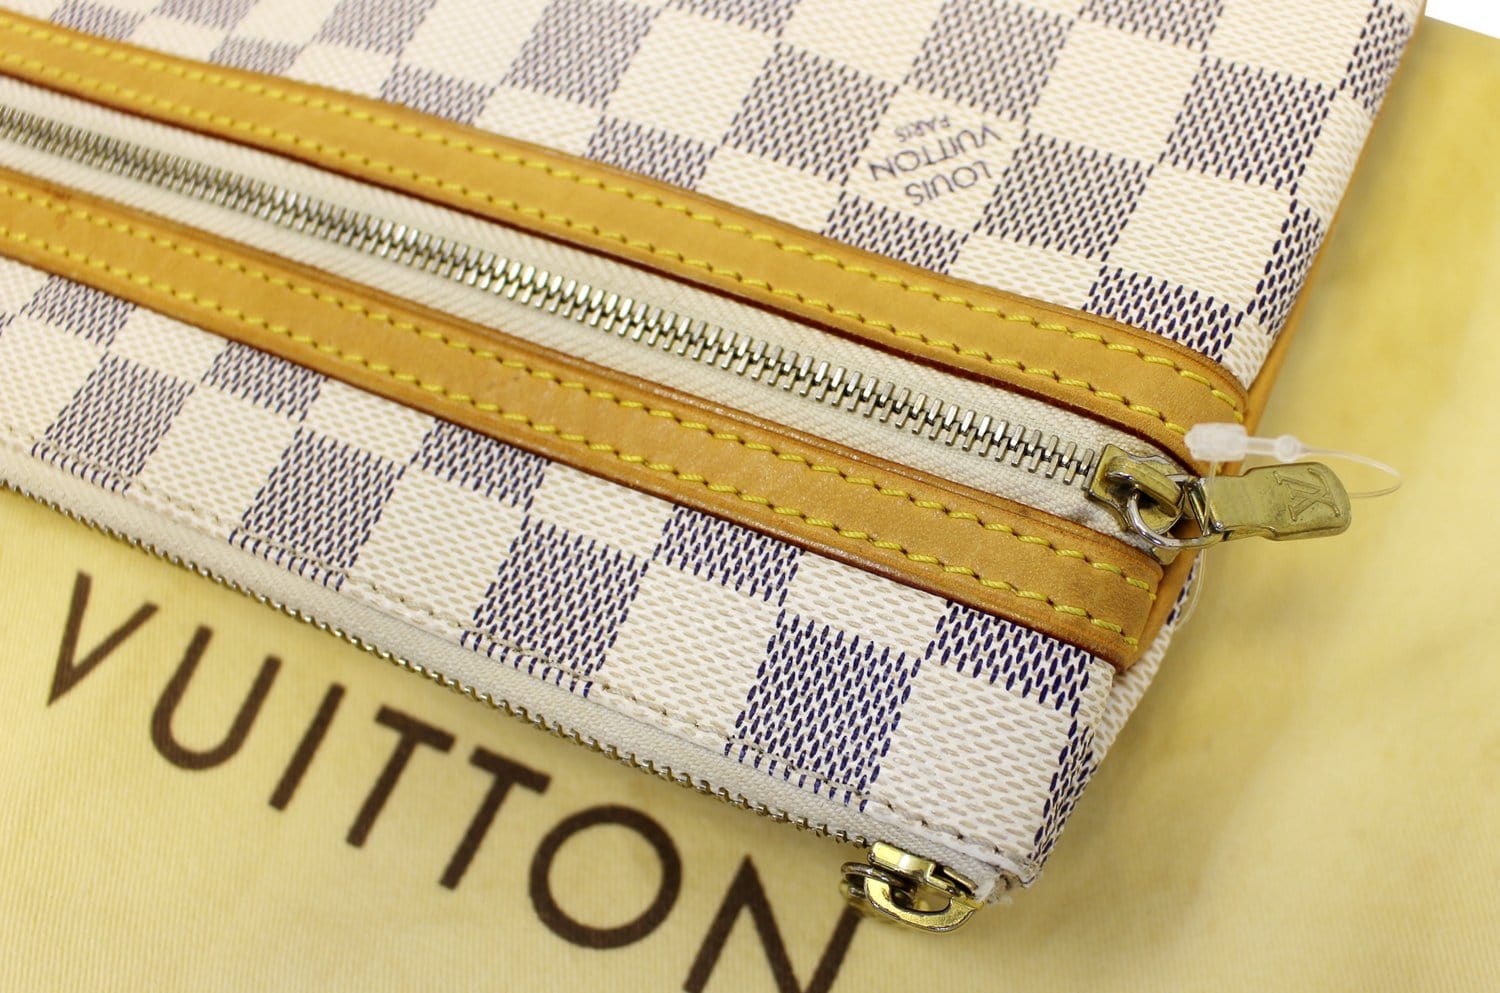 Louis Vuitton Damier Azur Canvas Pochette Bosphore Shoulder Bag